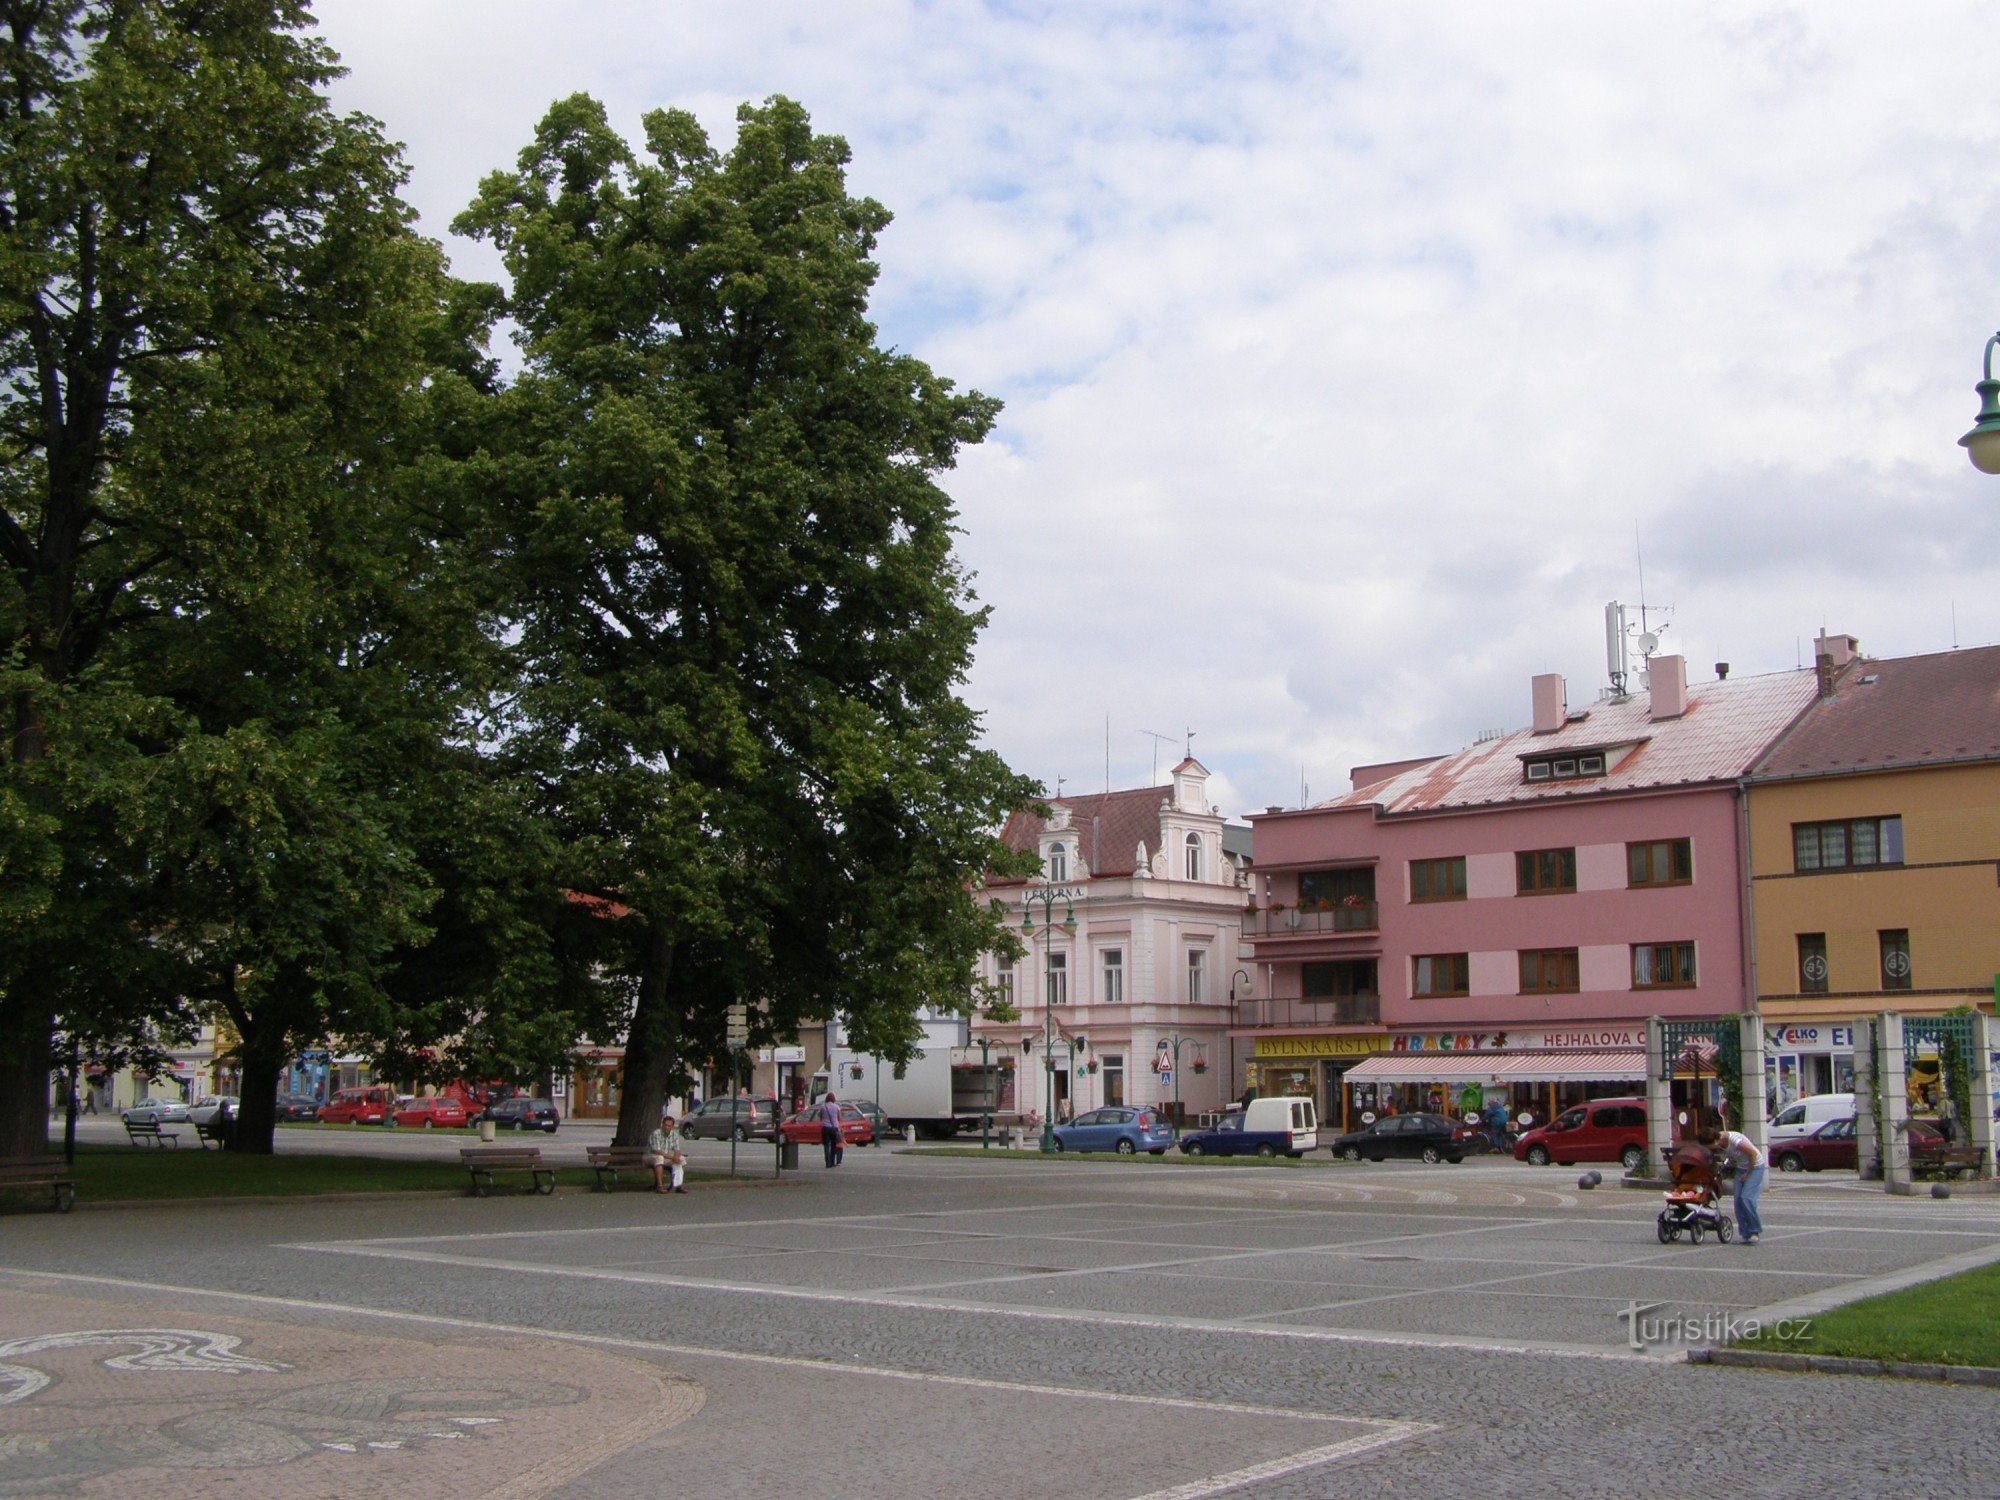 ngã tư du lịch Vysoké Mýto - quảng trường Přemysl Otakar II